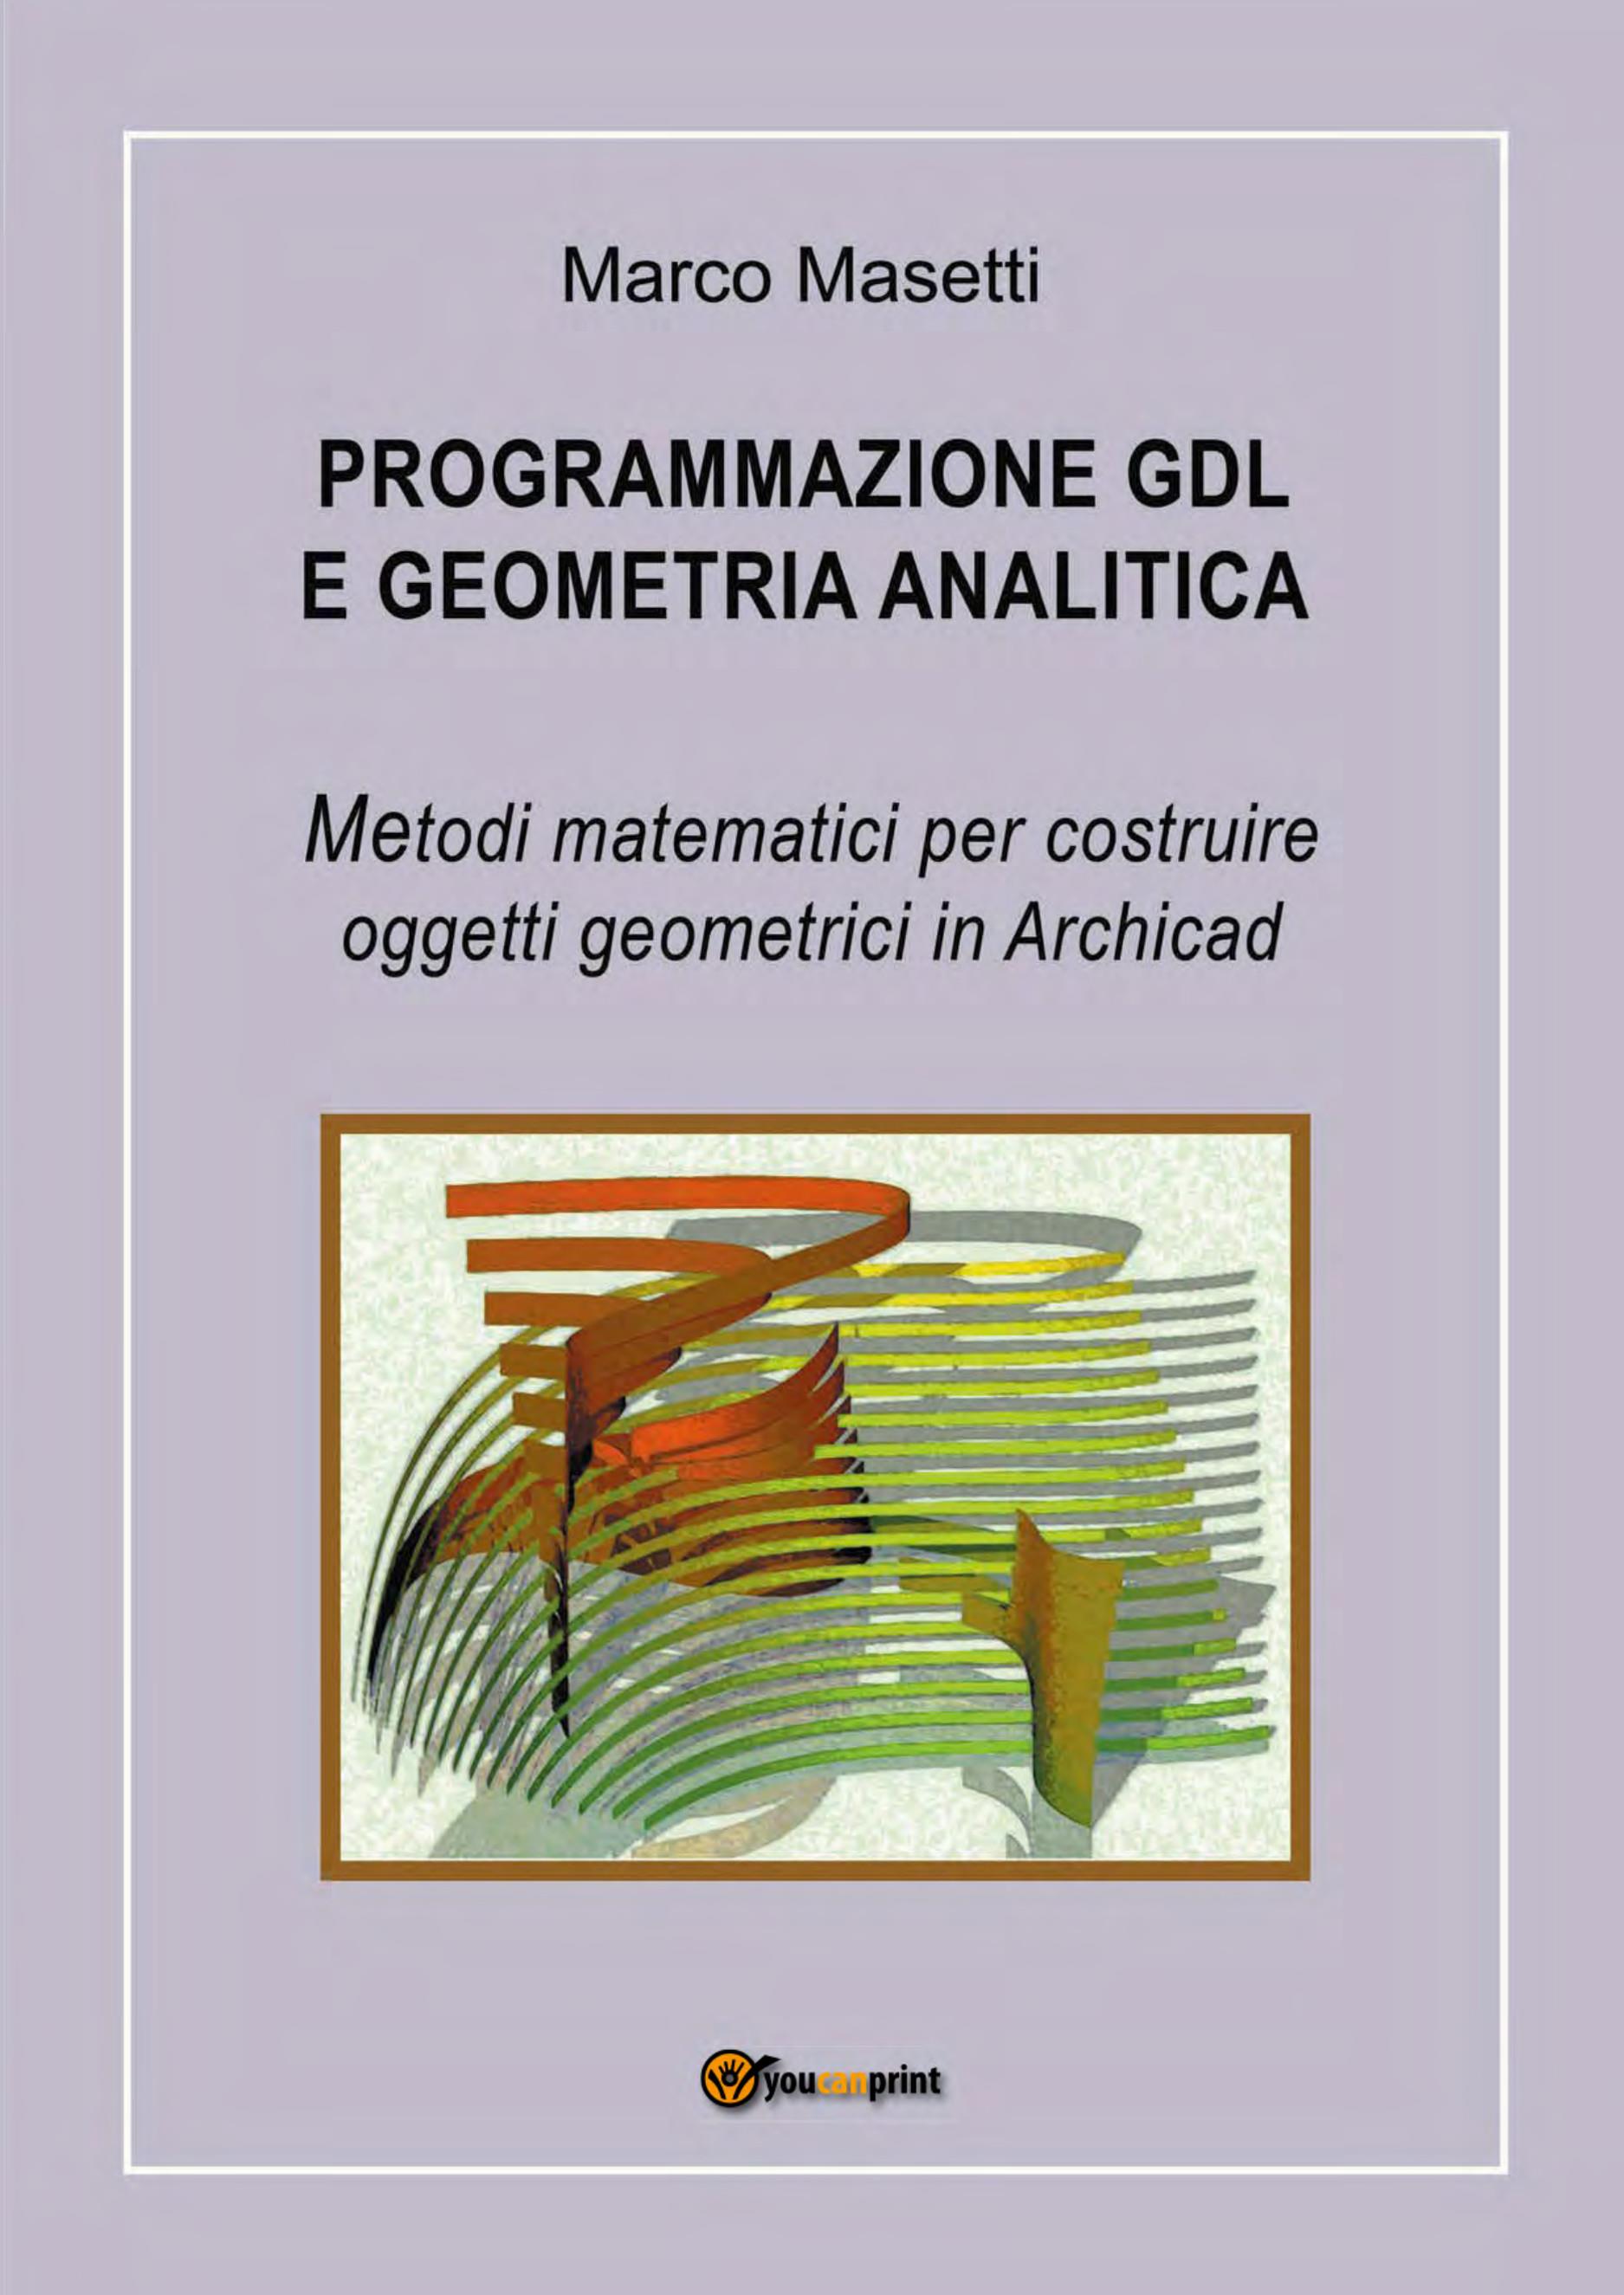 Programmazione GDL e geometria analitica